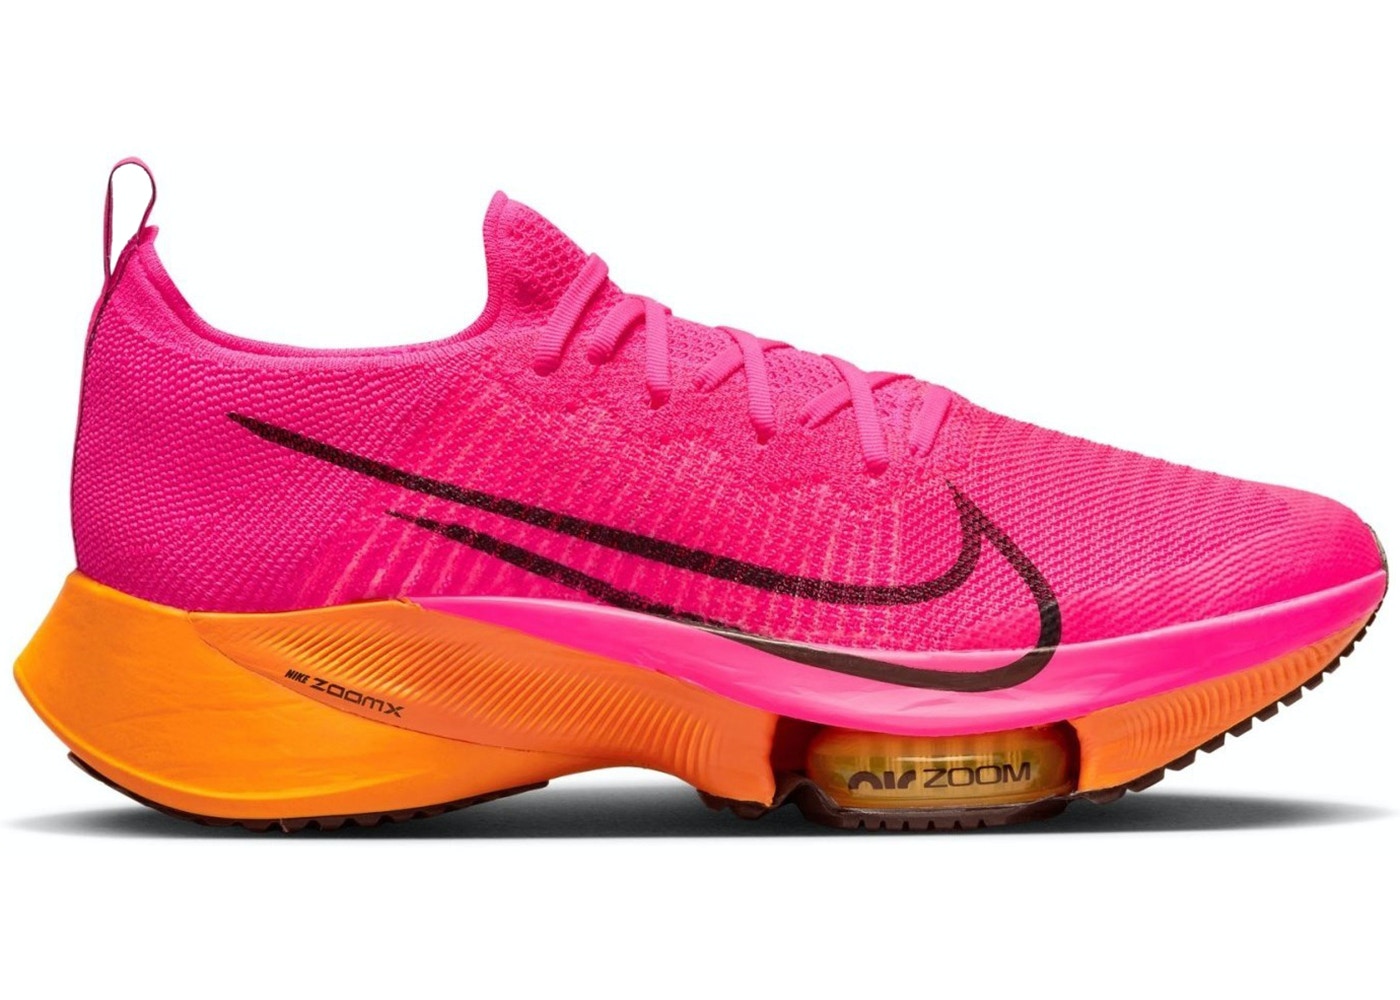 5/20【本日限定】1000円クーポンあり Nike Air Zoom Tempo Next Flyknit Hyper Pink Laser Orange ナイキ エア ズーム テンポ ネクスト フライニット CI9923-600 メンズ スニーカー ランニングシューズ 19SX-20230508144322-003